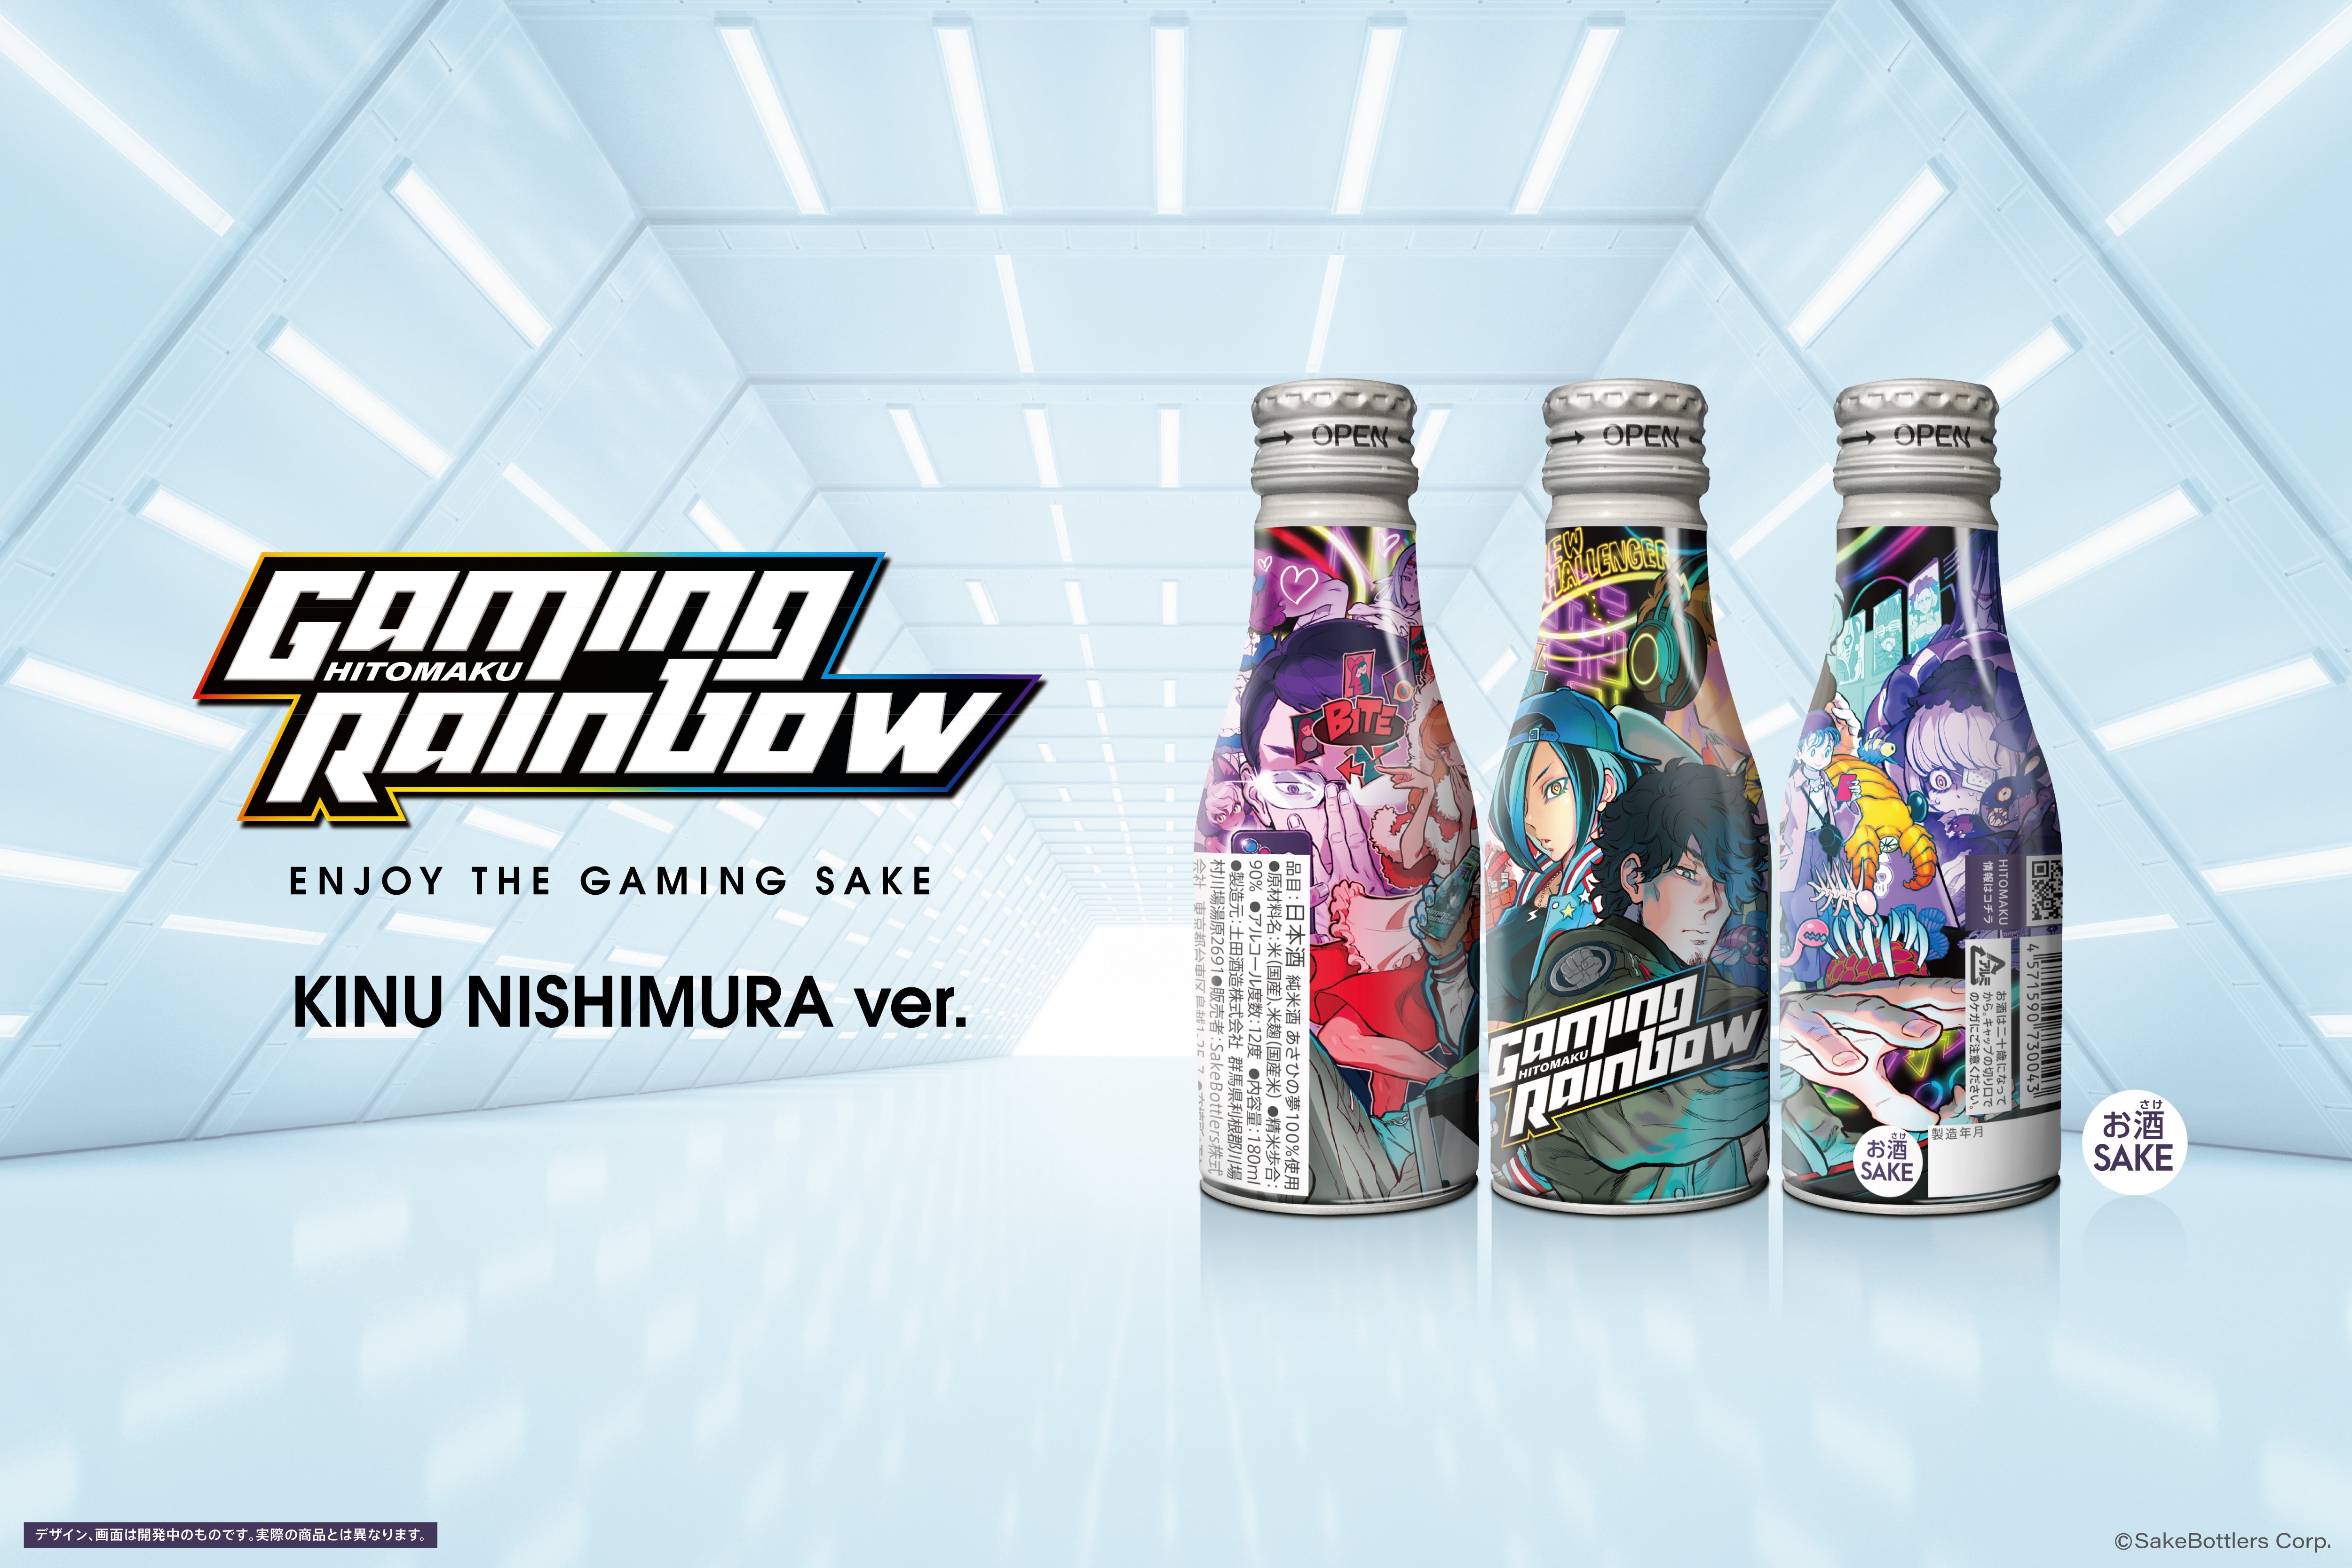 ゲーミング日本酒「GAMING RAINBOW」8缶セット（西村キヌ Ver.）